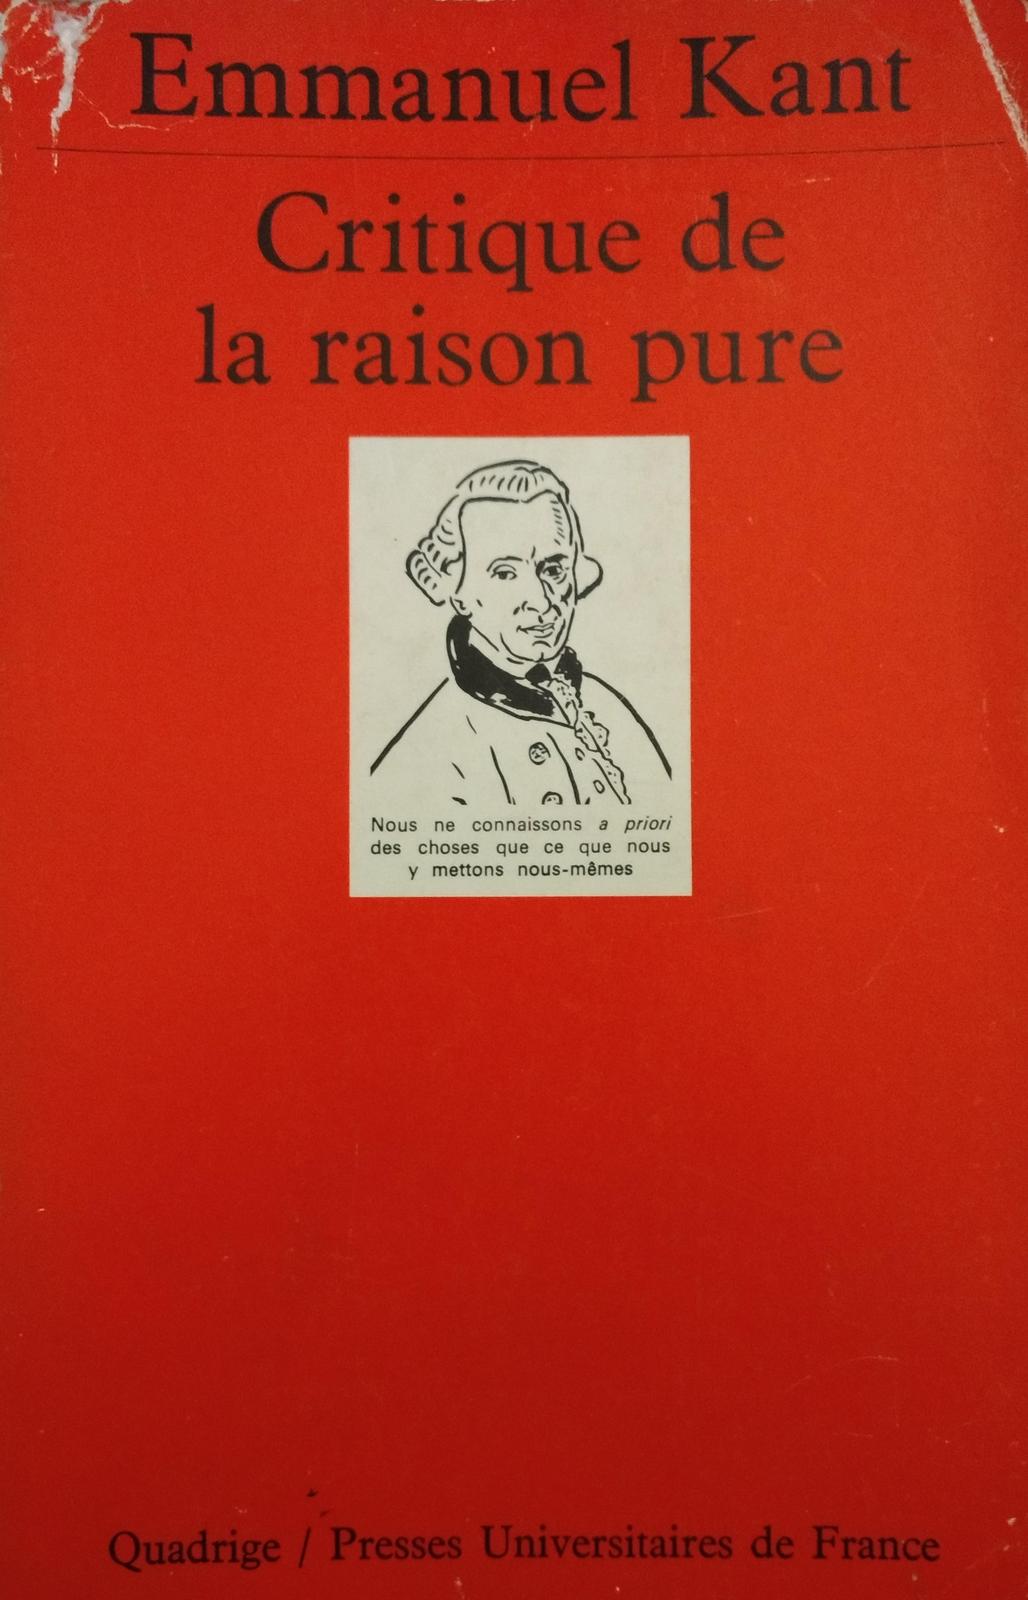 Critique de la raison pure (French language, 1986, Presses Universitaires de France)